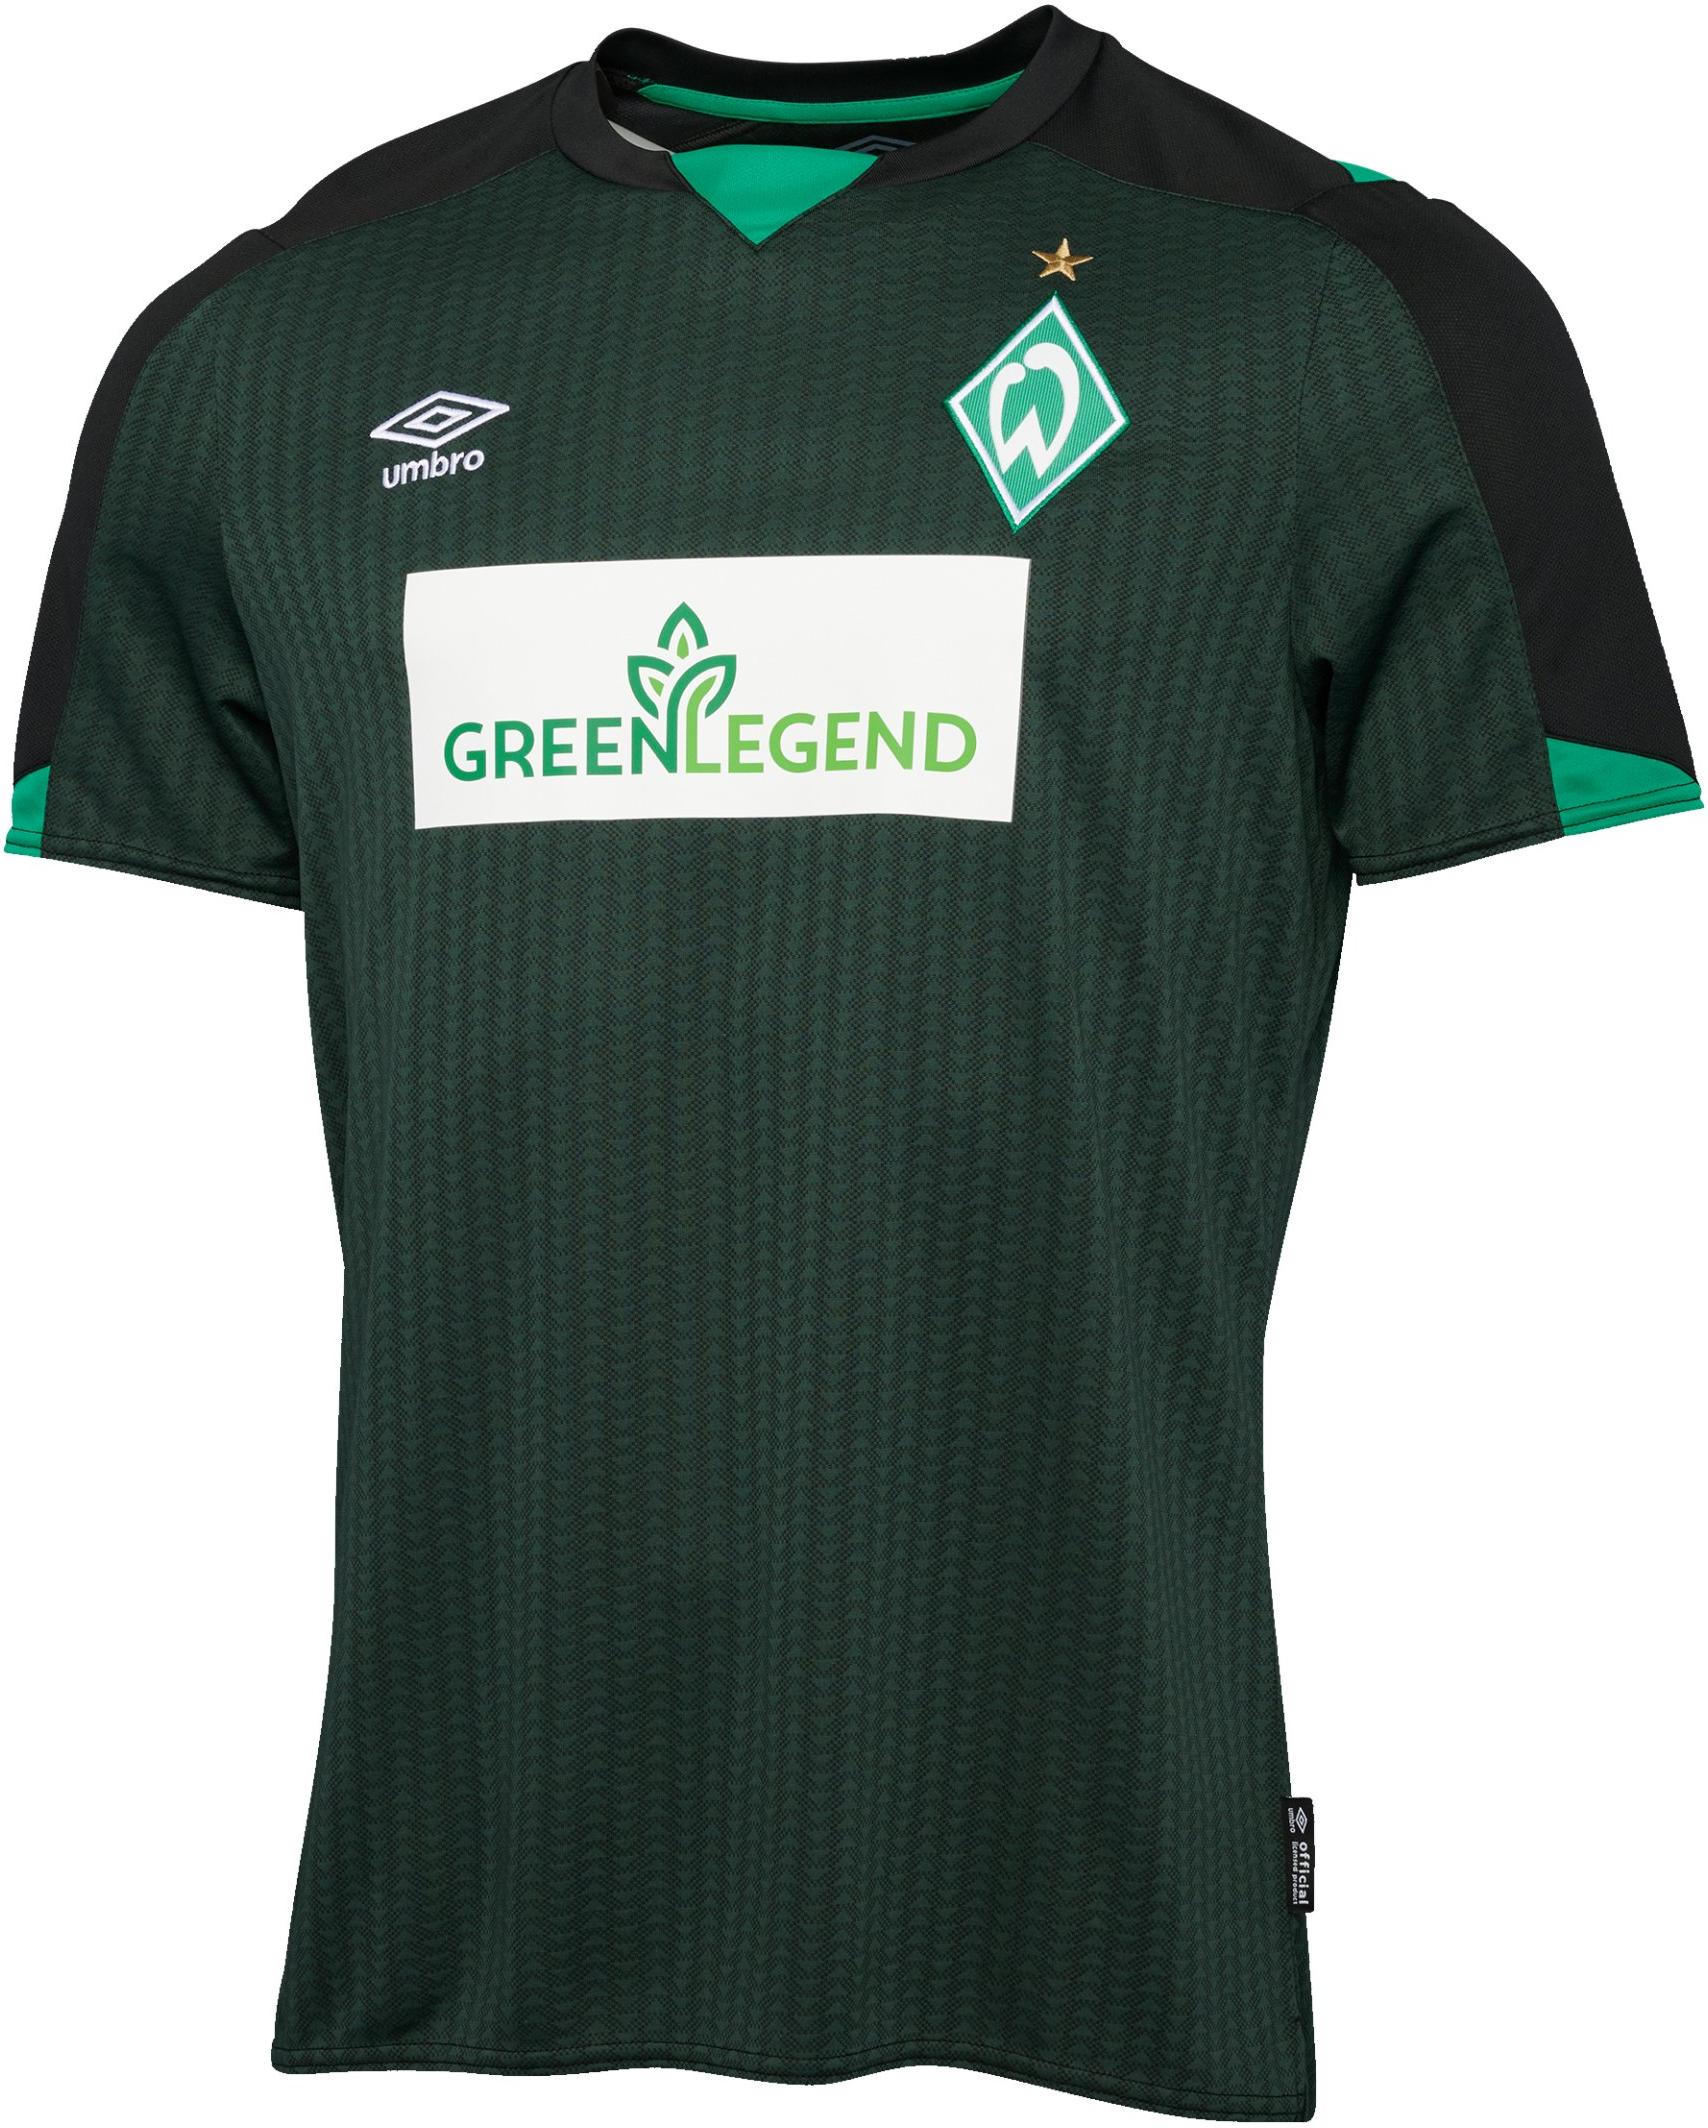 Bluza Umbro SV Werder Bremen t 3rd 2021/22